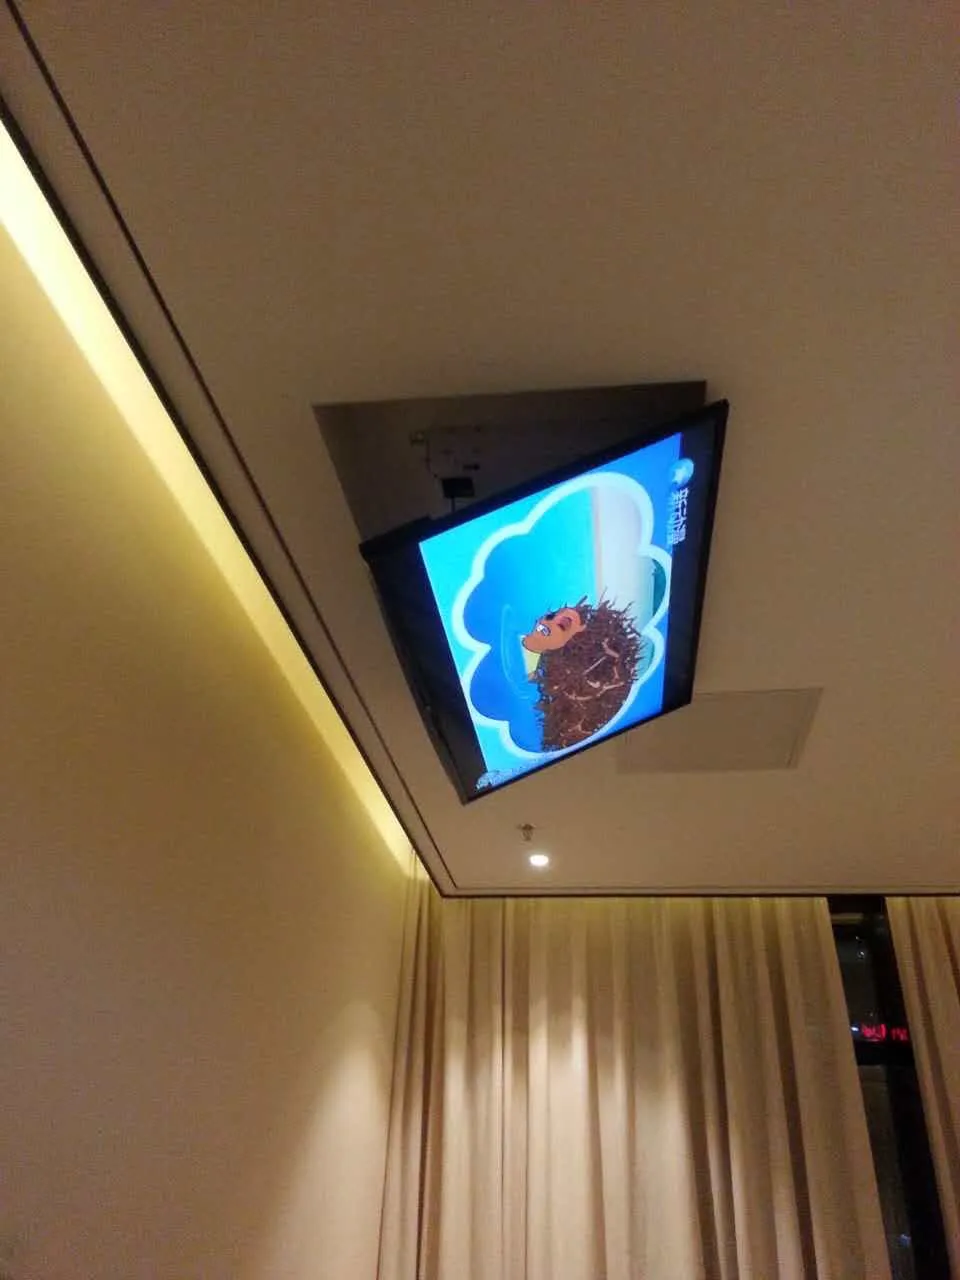 Support TV motorisé pour plafond